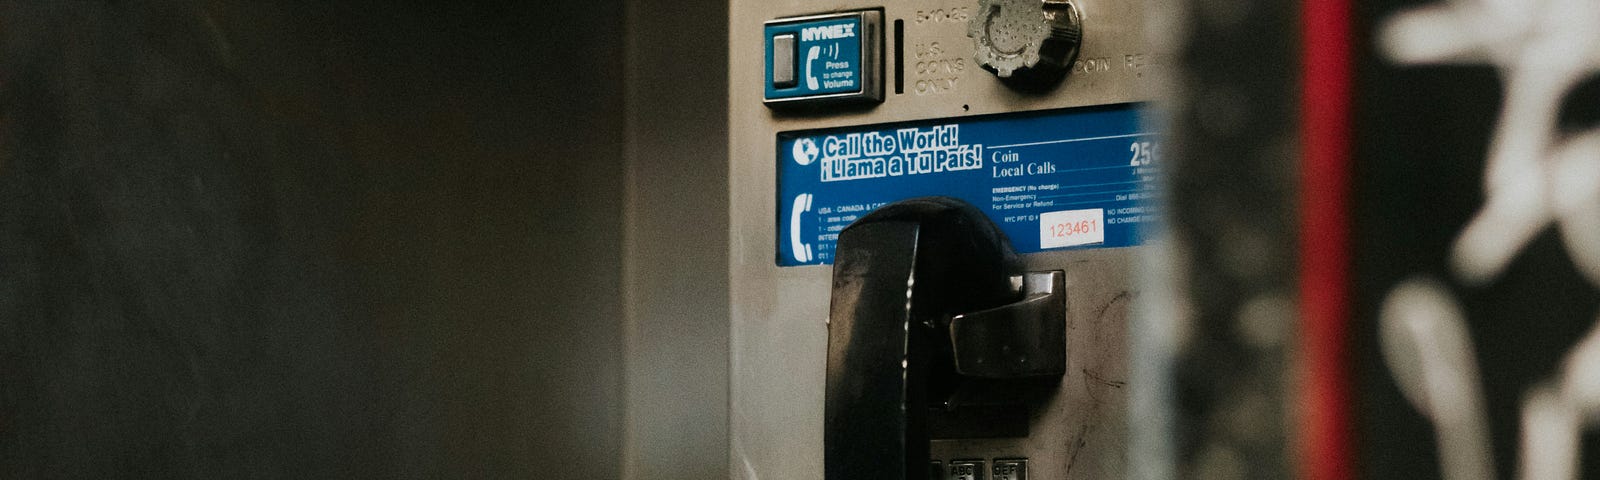 Payphone from the twentieth century.